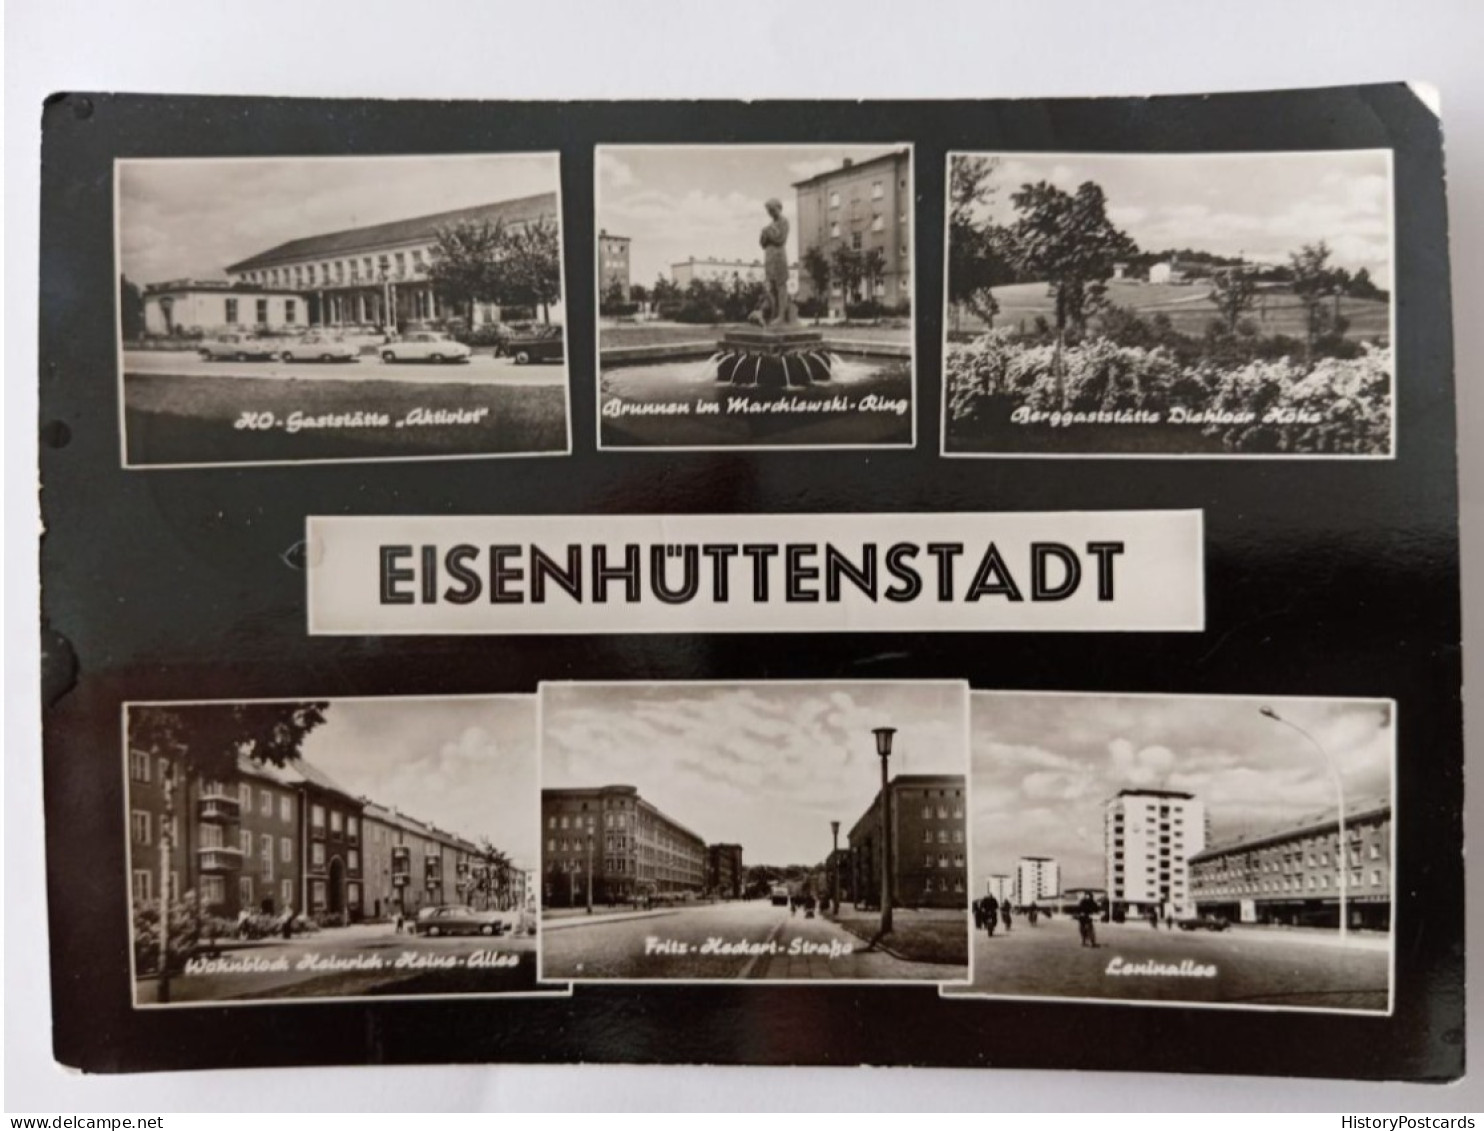 Eisenhüttenstadt, Mehrbild AK , 1963 - Eisenhüttenstadt